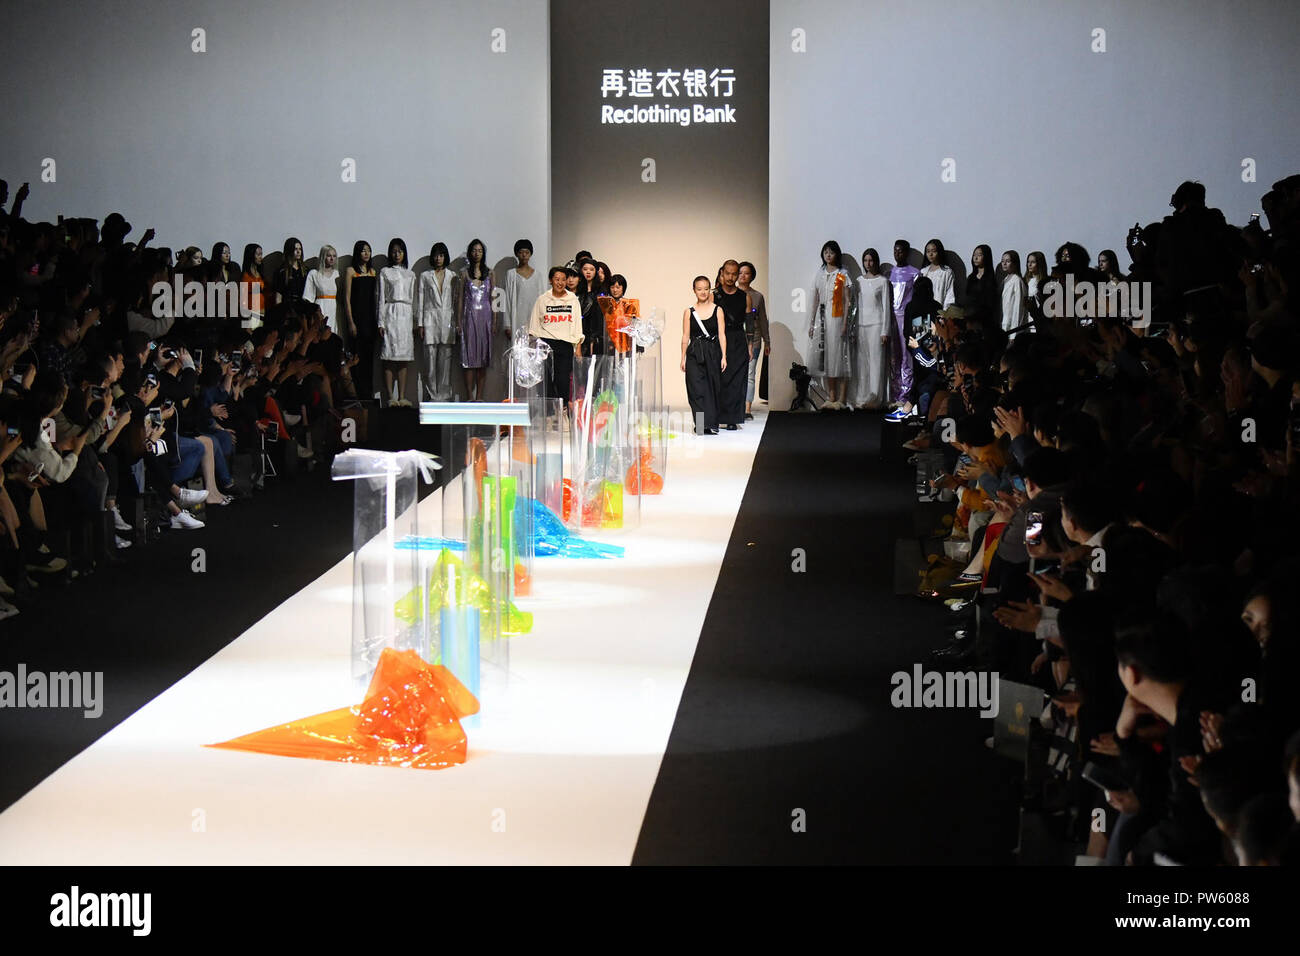 (181013) -- Shanghai, 13 ottobre, 2018 (Xinhua) -- Modelli presente creazioni del Reclothing Bank durante la primavera/estate 2019 collezioni di Shanghai la settimana della moda a Shanghai in Cina orientale, Ottobre 12, 2018. (Xinhua/Guo Changyao) (yxb) Foto Stock